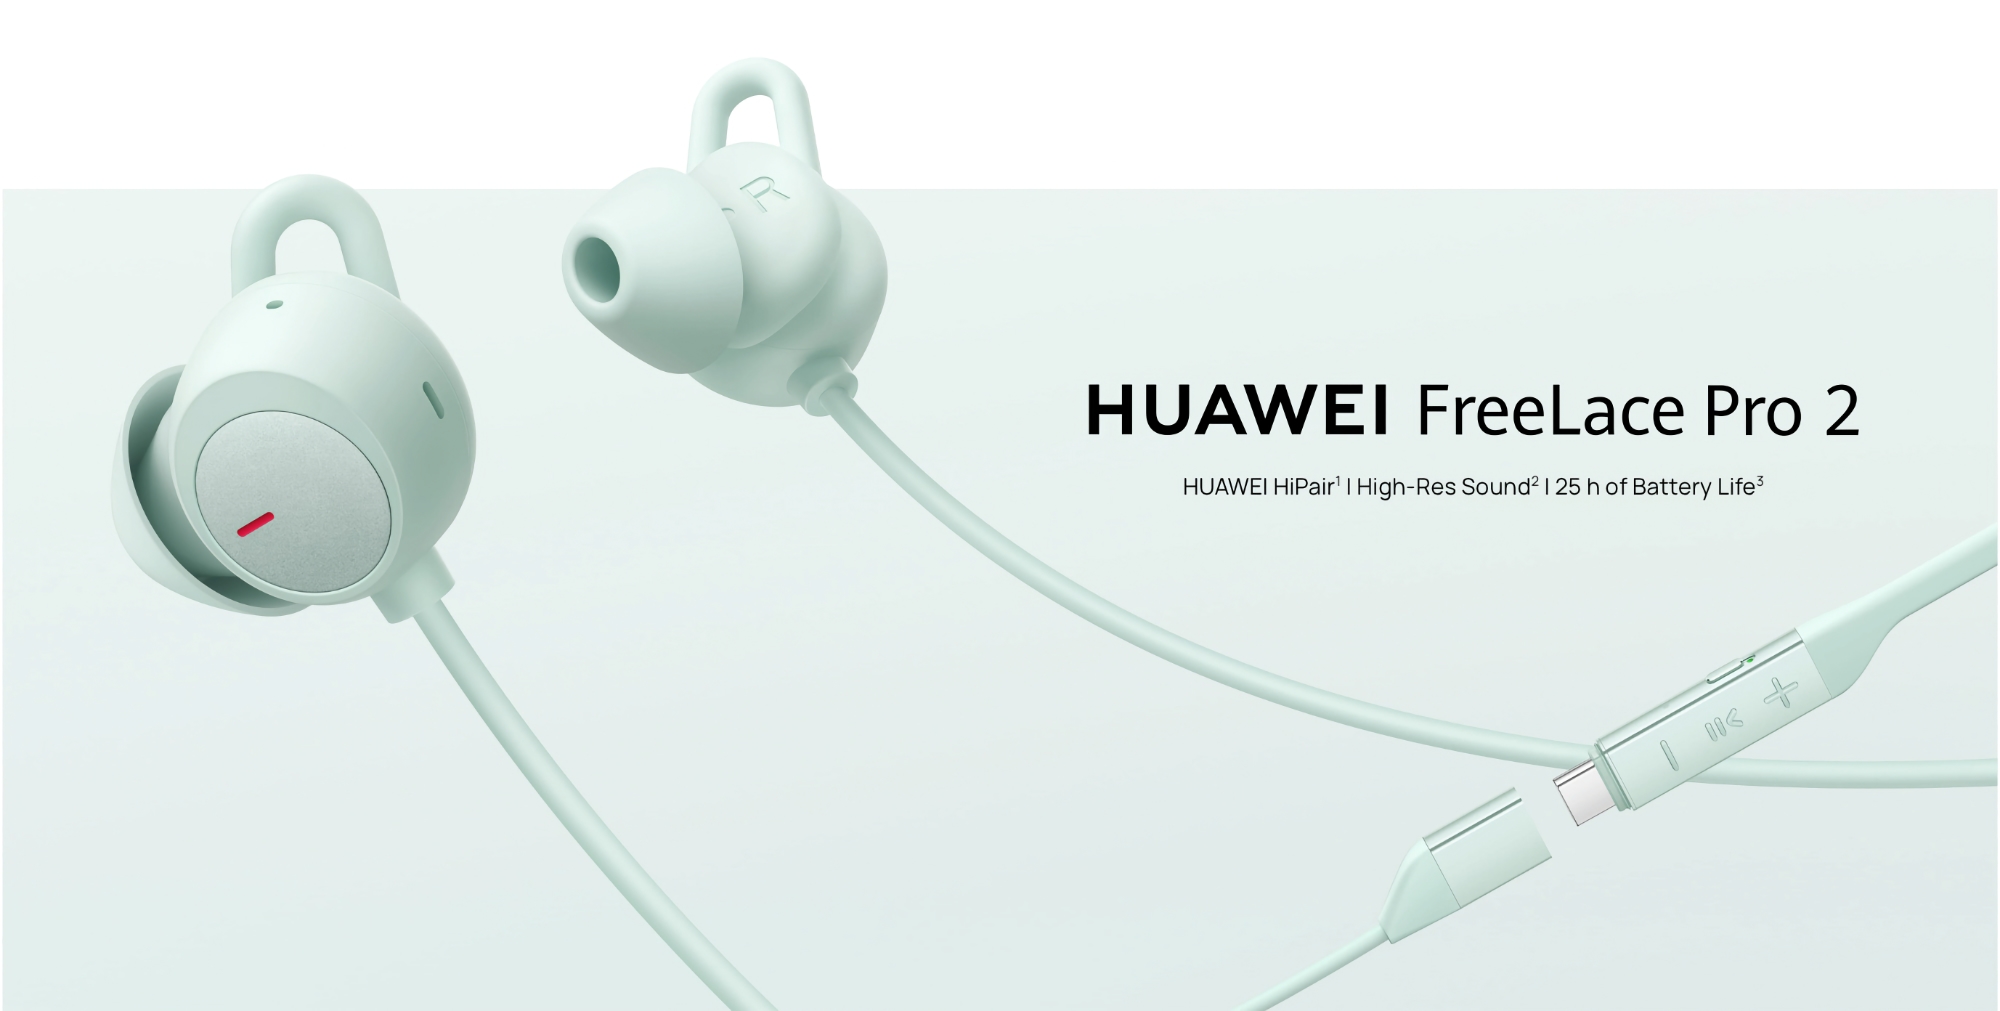 Huawei heeft de FreeLace Pro 2 met ANC en een batterijlevensduur tot 25 uur gelanceerd op de wereldmarkt